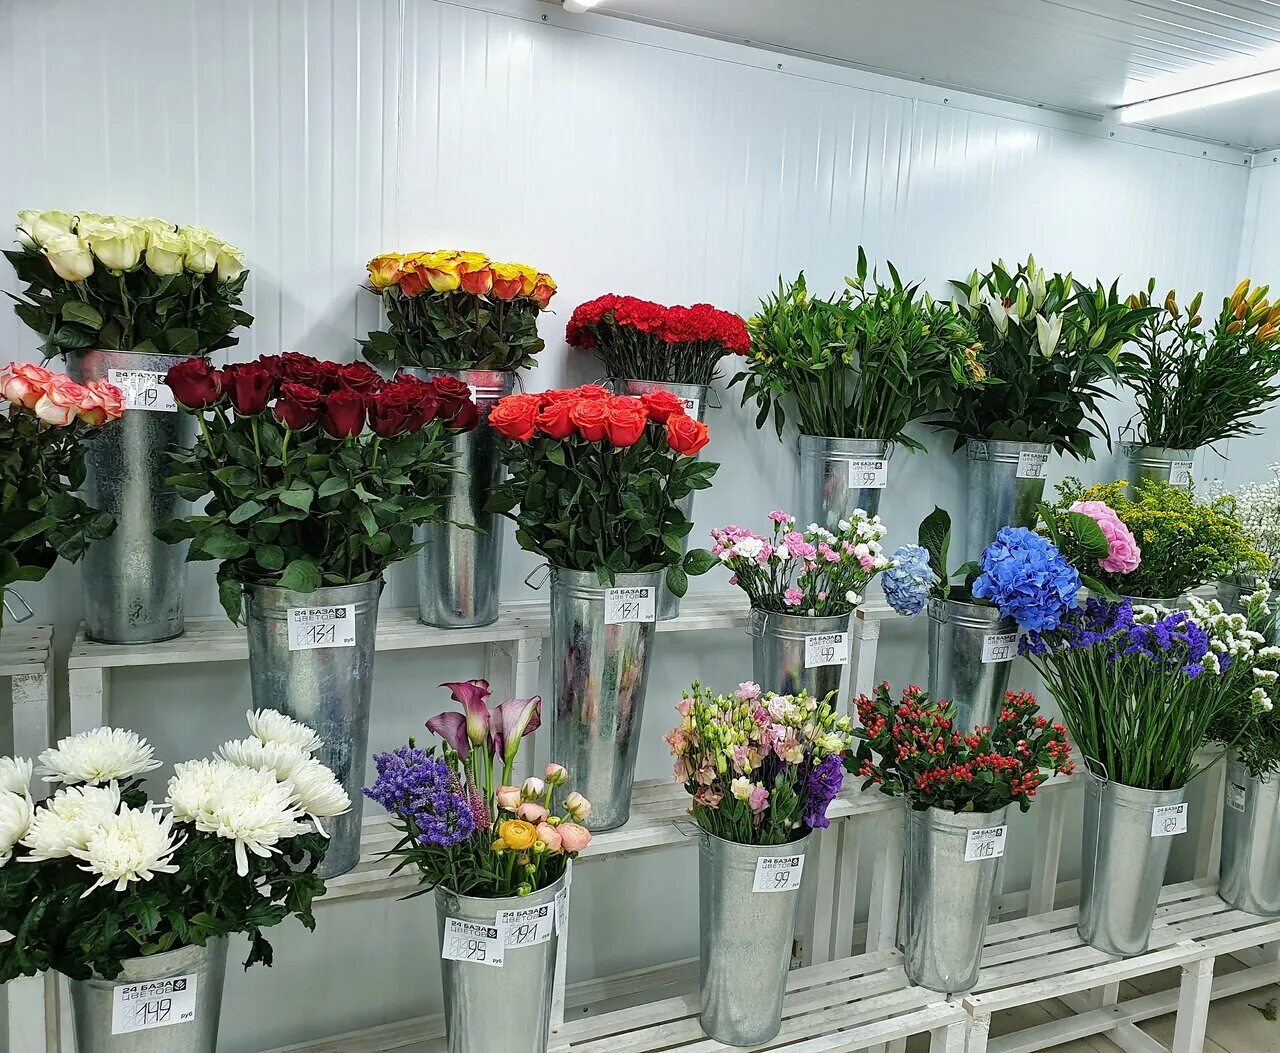 Цветочный склад Оазис Балашиха. Цветы в магазине. Обычные цветы в цветочных магазинах. Цветочный магазин дешевый.